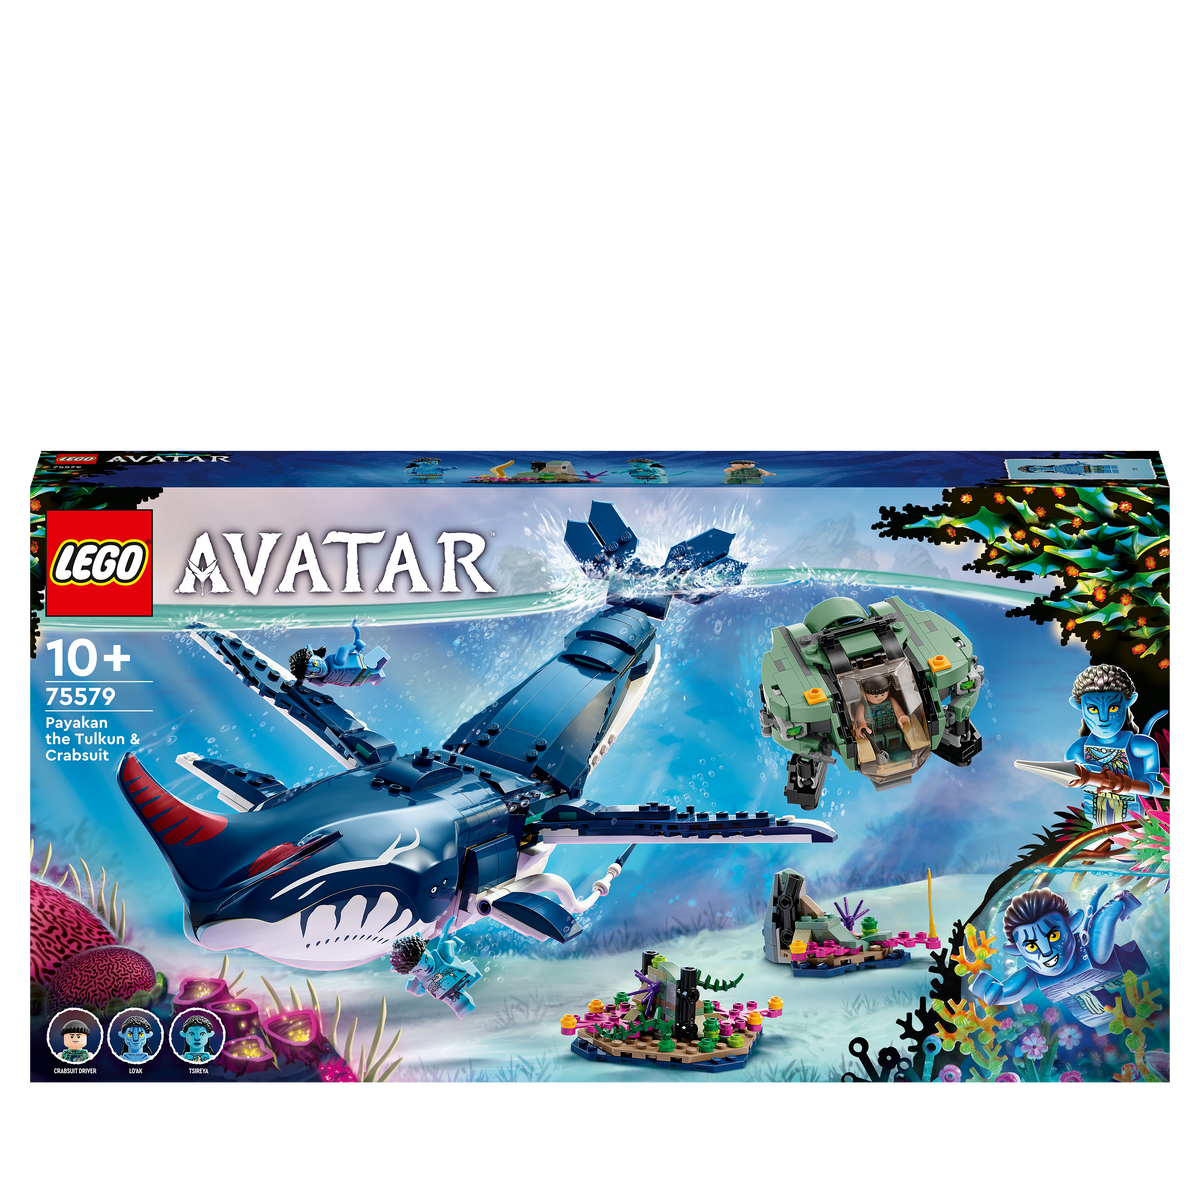 LEGO 75579 PAYAKAN LEGO TULKUN KRABBENANZUG UND Avatar DER